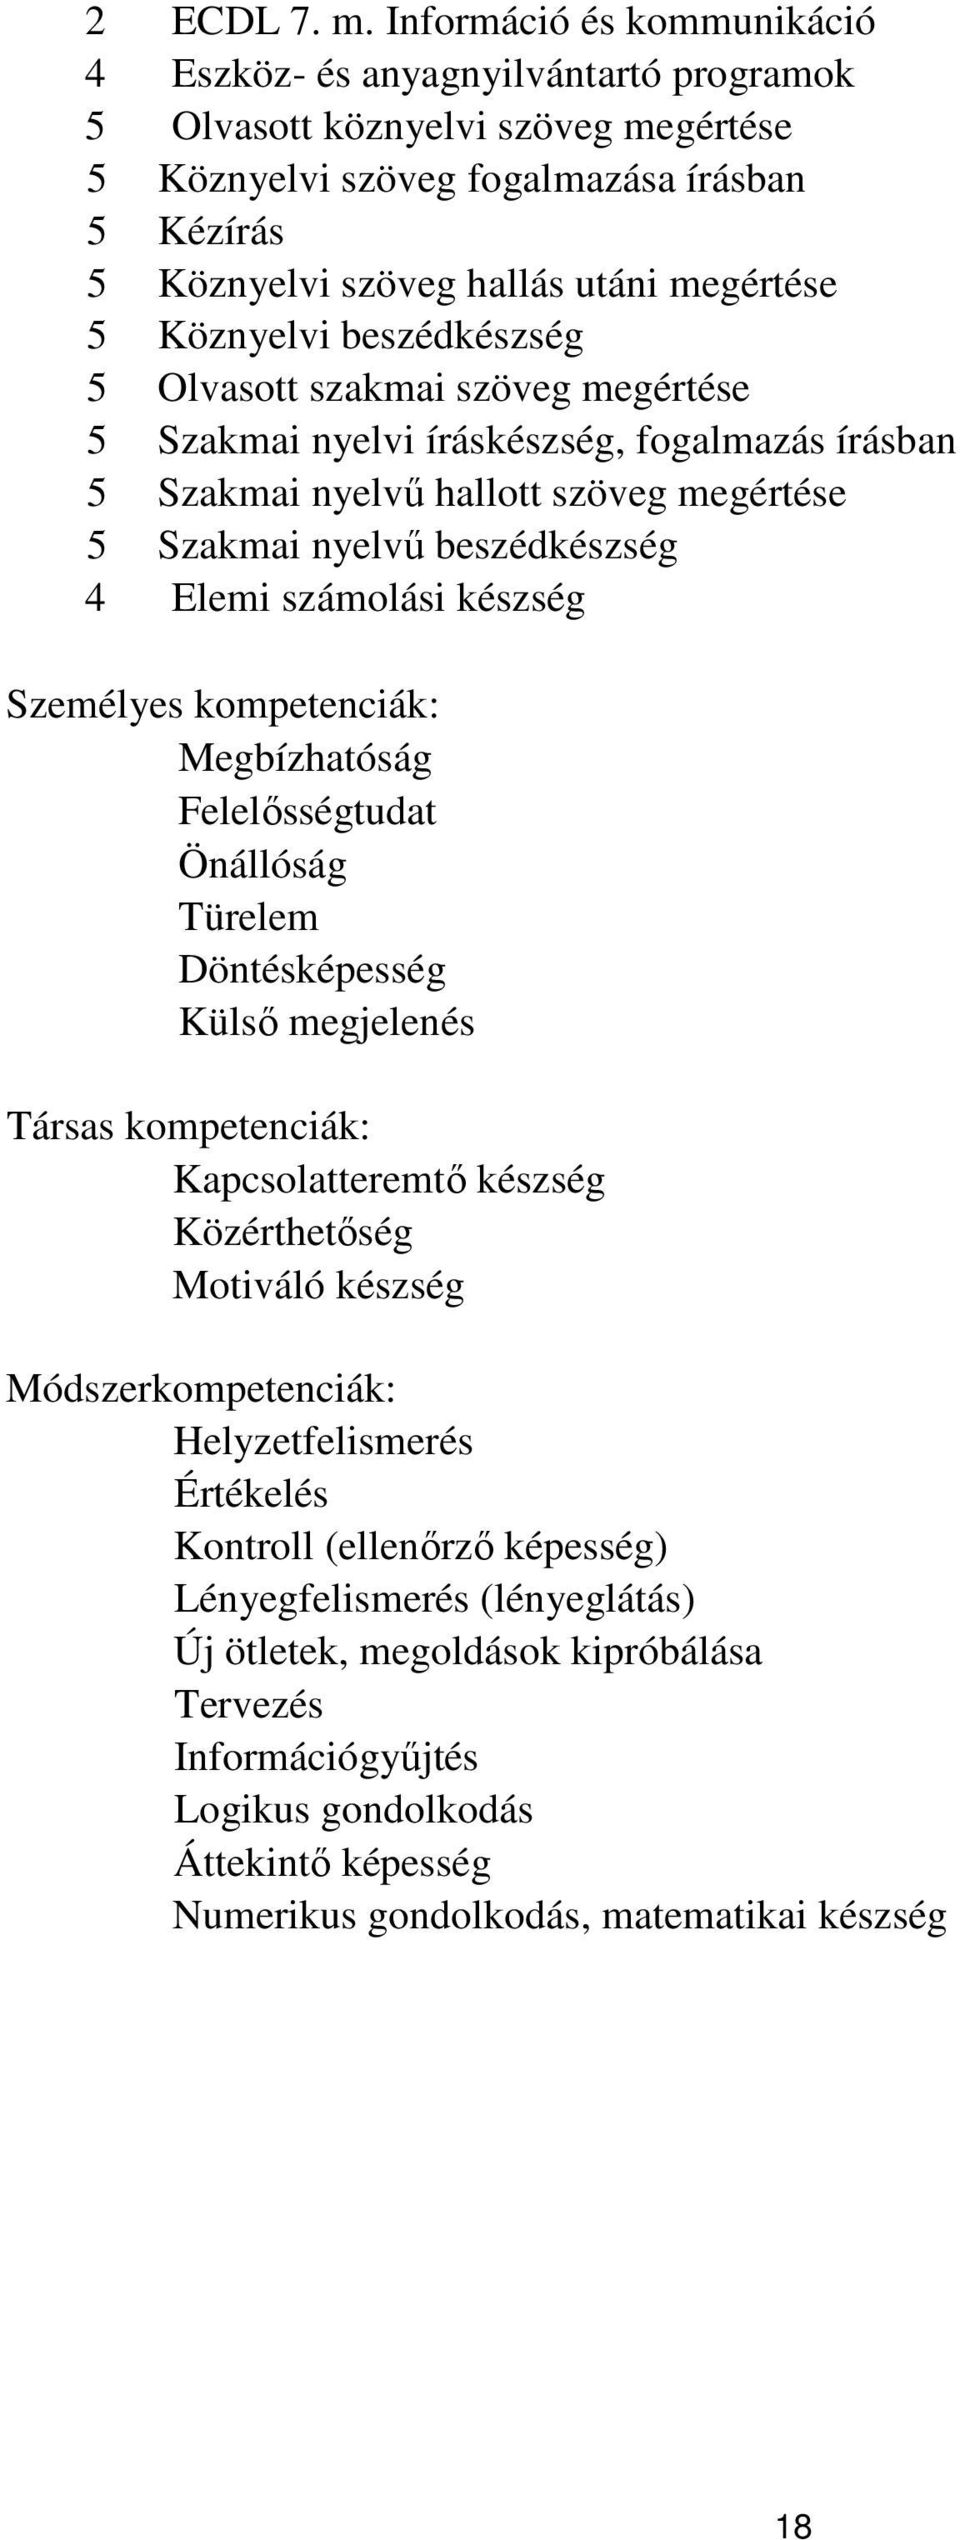 Köznyelvi beszédkészség 5 Olvasott szakmai szöveg megértése 5 Szakmai nyelvi íráskészség, fogalmazás írásban 5 Szakmai nyelvű hallott szöveg megértése 5 Szakmai nyelvű beszédkészség 4 Elemi számolási